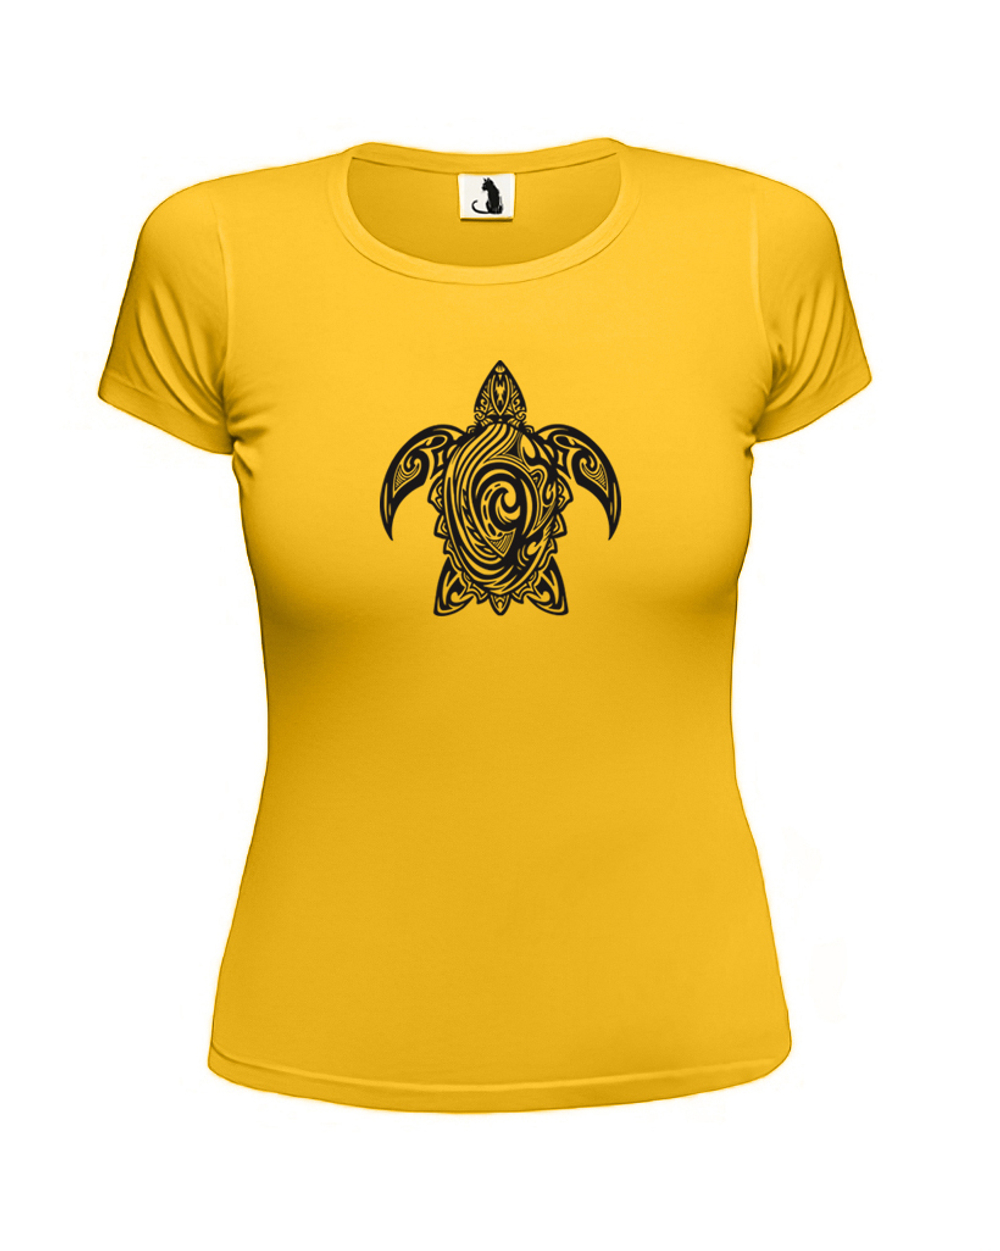 Футболка с черепахой Tribal женская приталенная желтая с черным рисунком